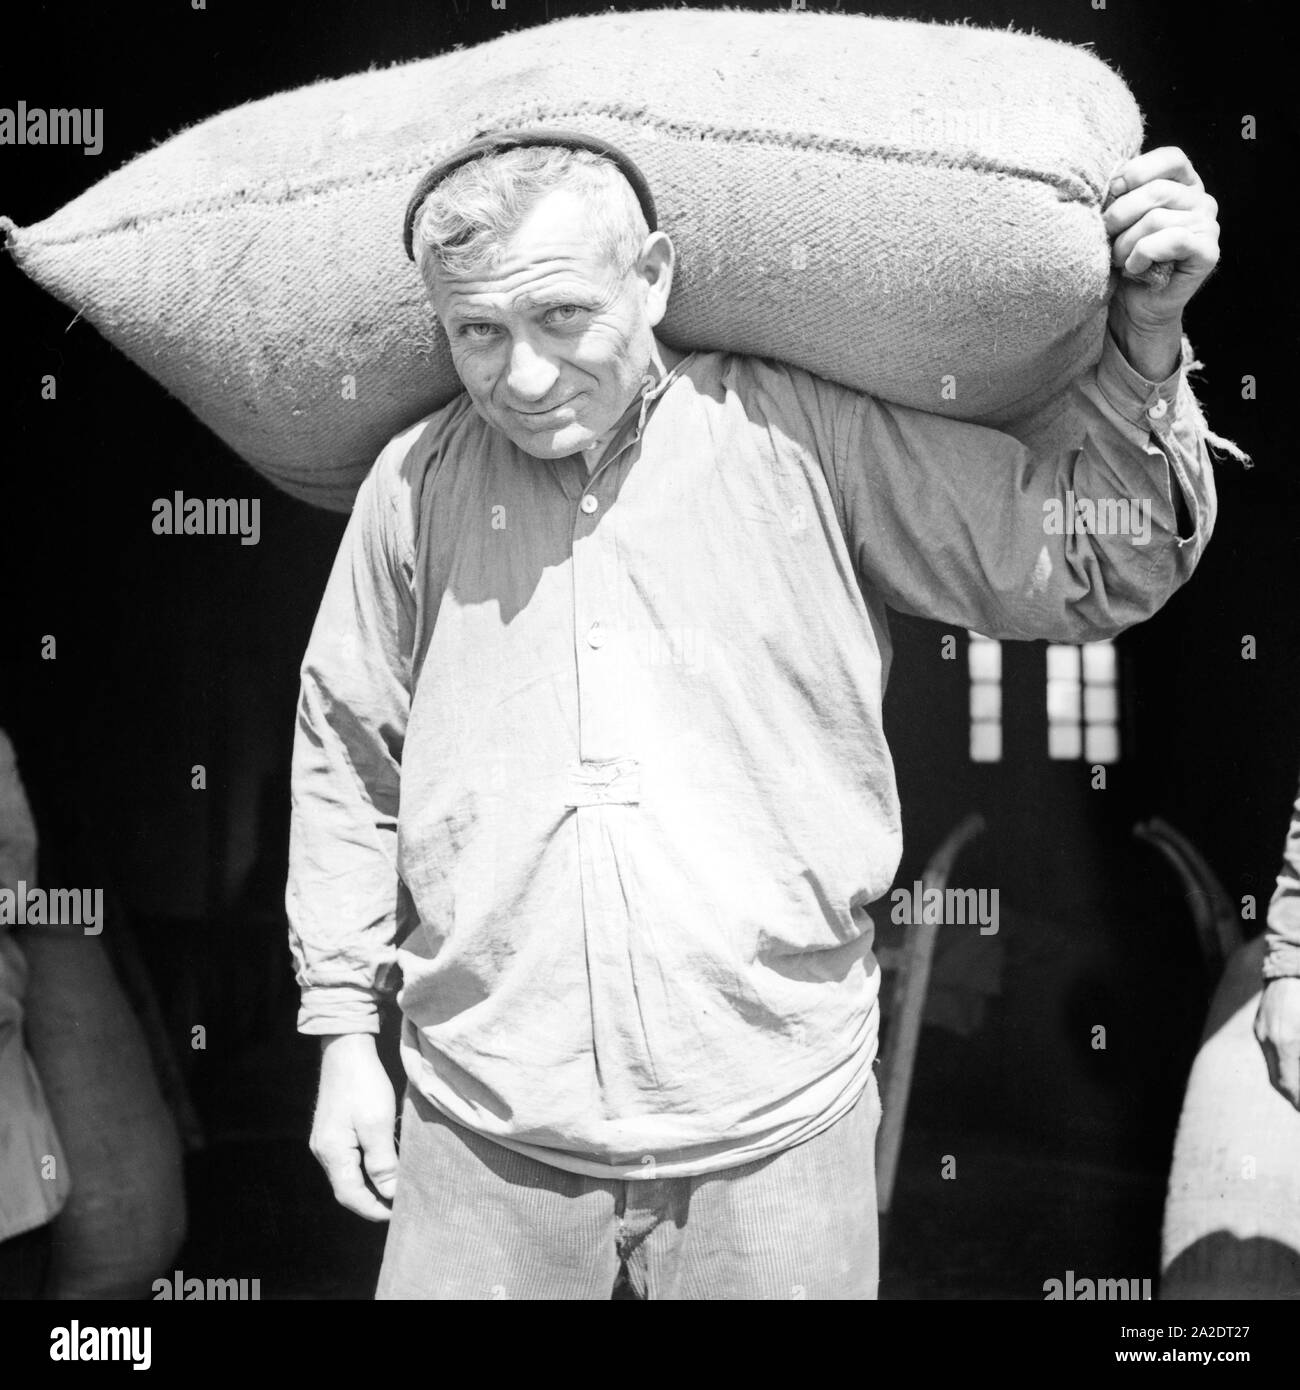 Ein Lagerarbeiter schleppt einen Sack aus dem Lagerhaus, Deutschland 1930er Jahre. A warehouseman carrying a sack out iof a warehouse, Germany 1930s. Stock Photo